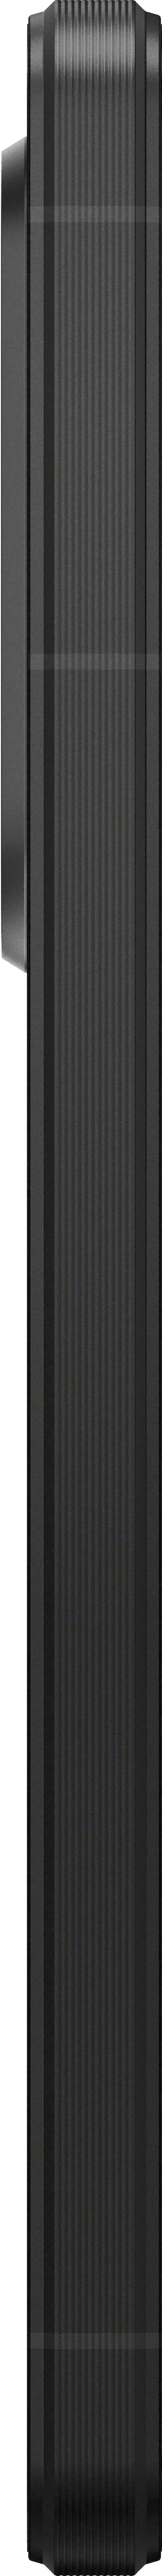 Xperia 1 VI - black - side right